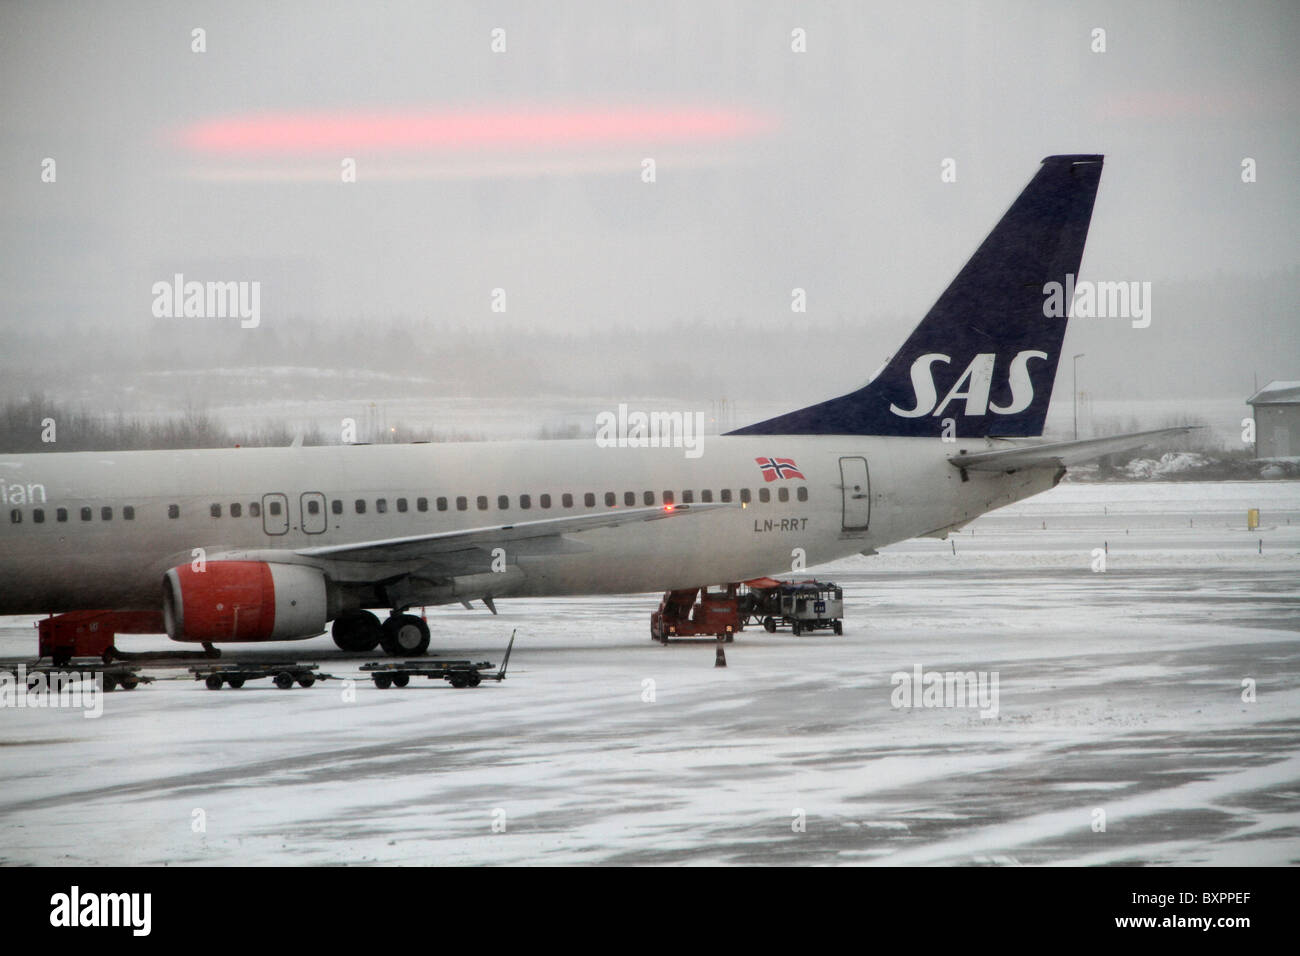 L'aéroport d'Arlanda, Stockholm, Suède. Avions SAS sur le tarmac de neige un jour brumeux et relié à l'aéroport d'Arlanda. Banque D'Images